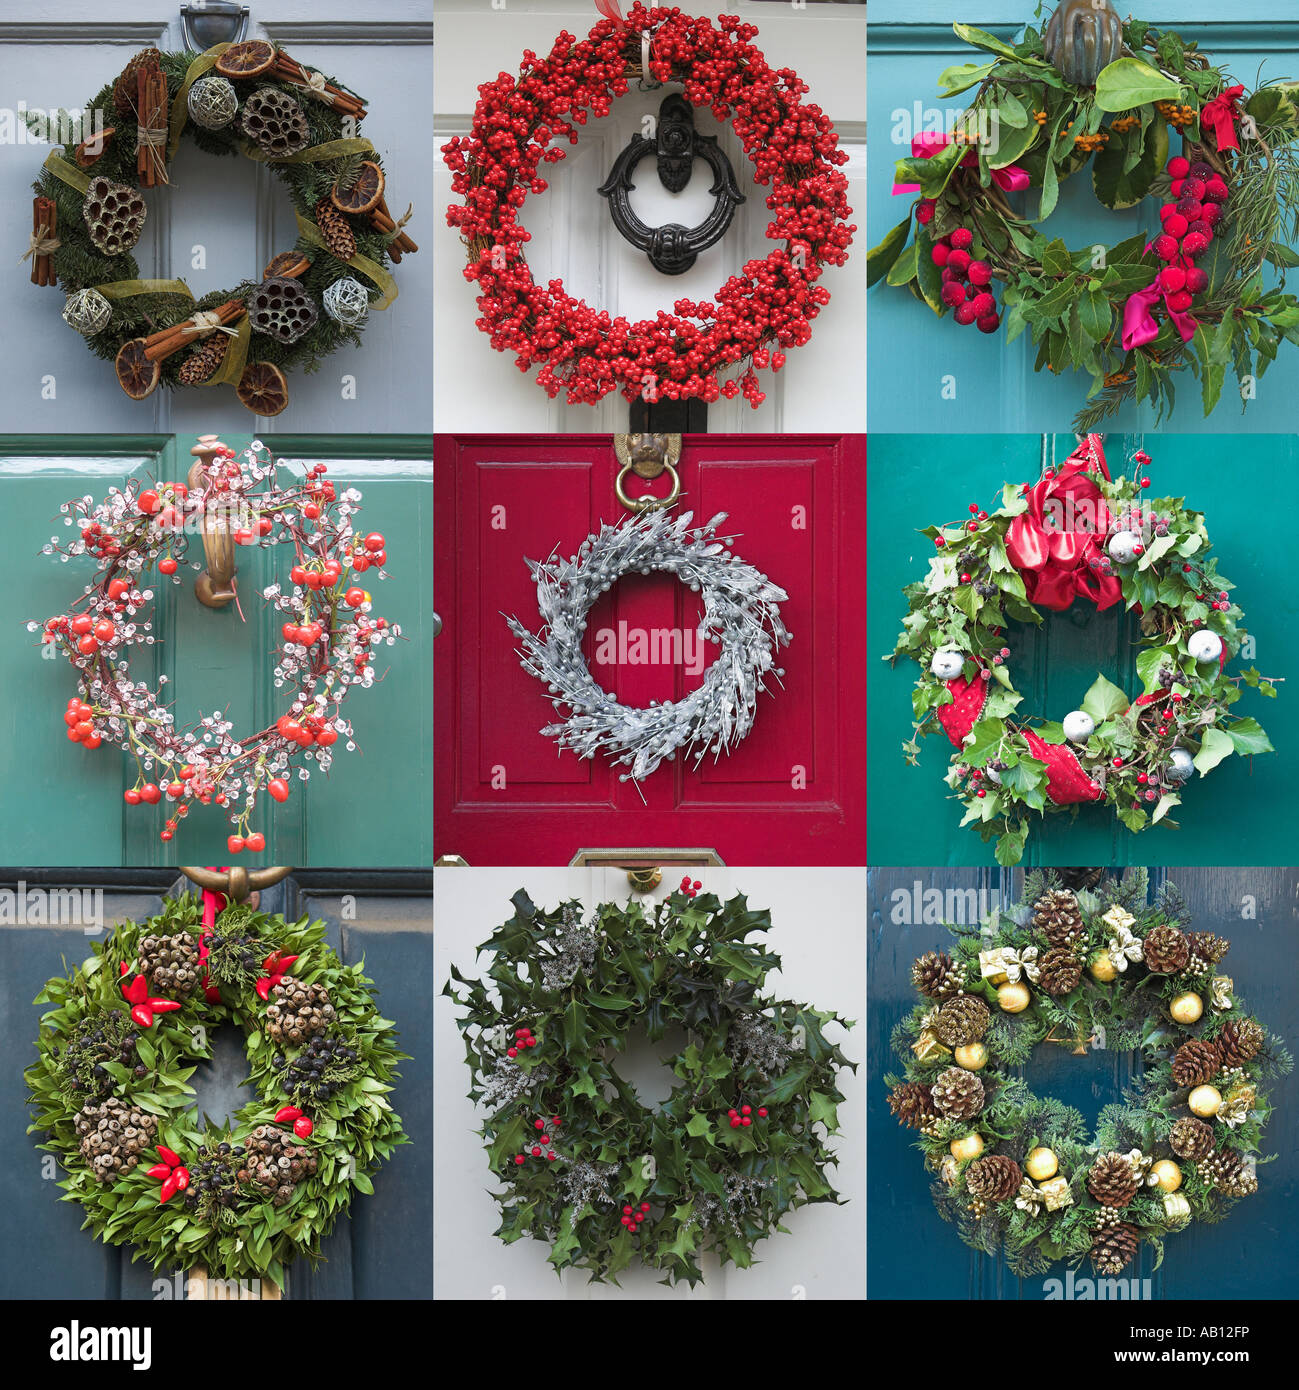 Seasonal Christmas wreaths on front doors Stock Photo